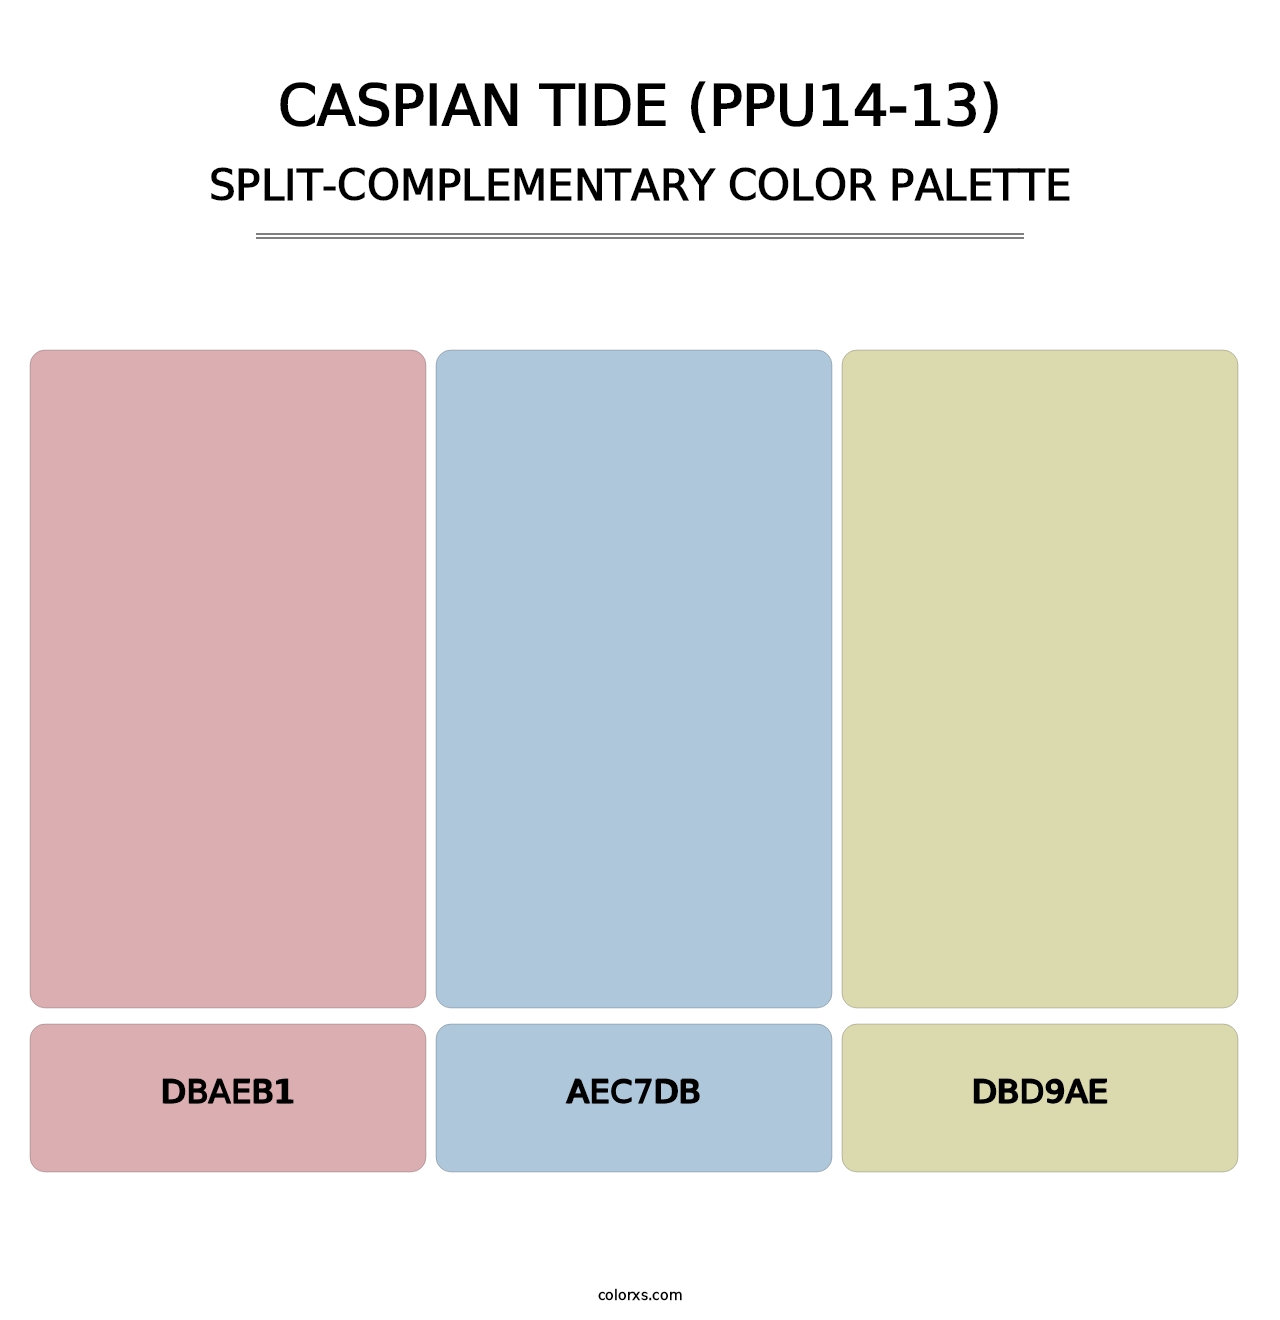 Caspian Tide (PPU14-13) - Split-Complementary Color Palette